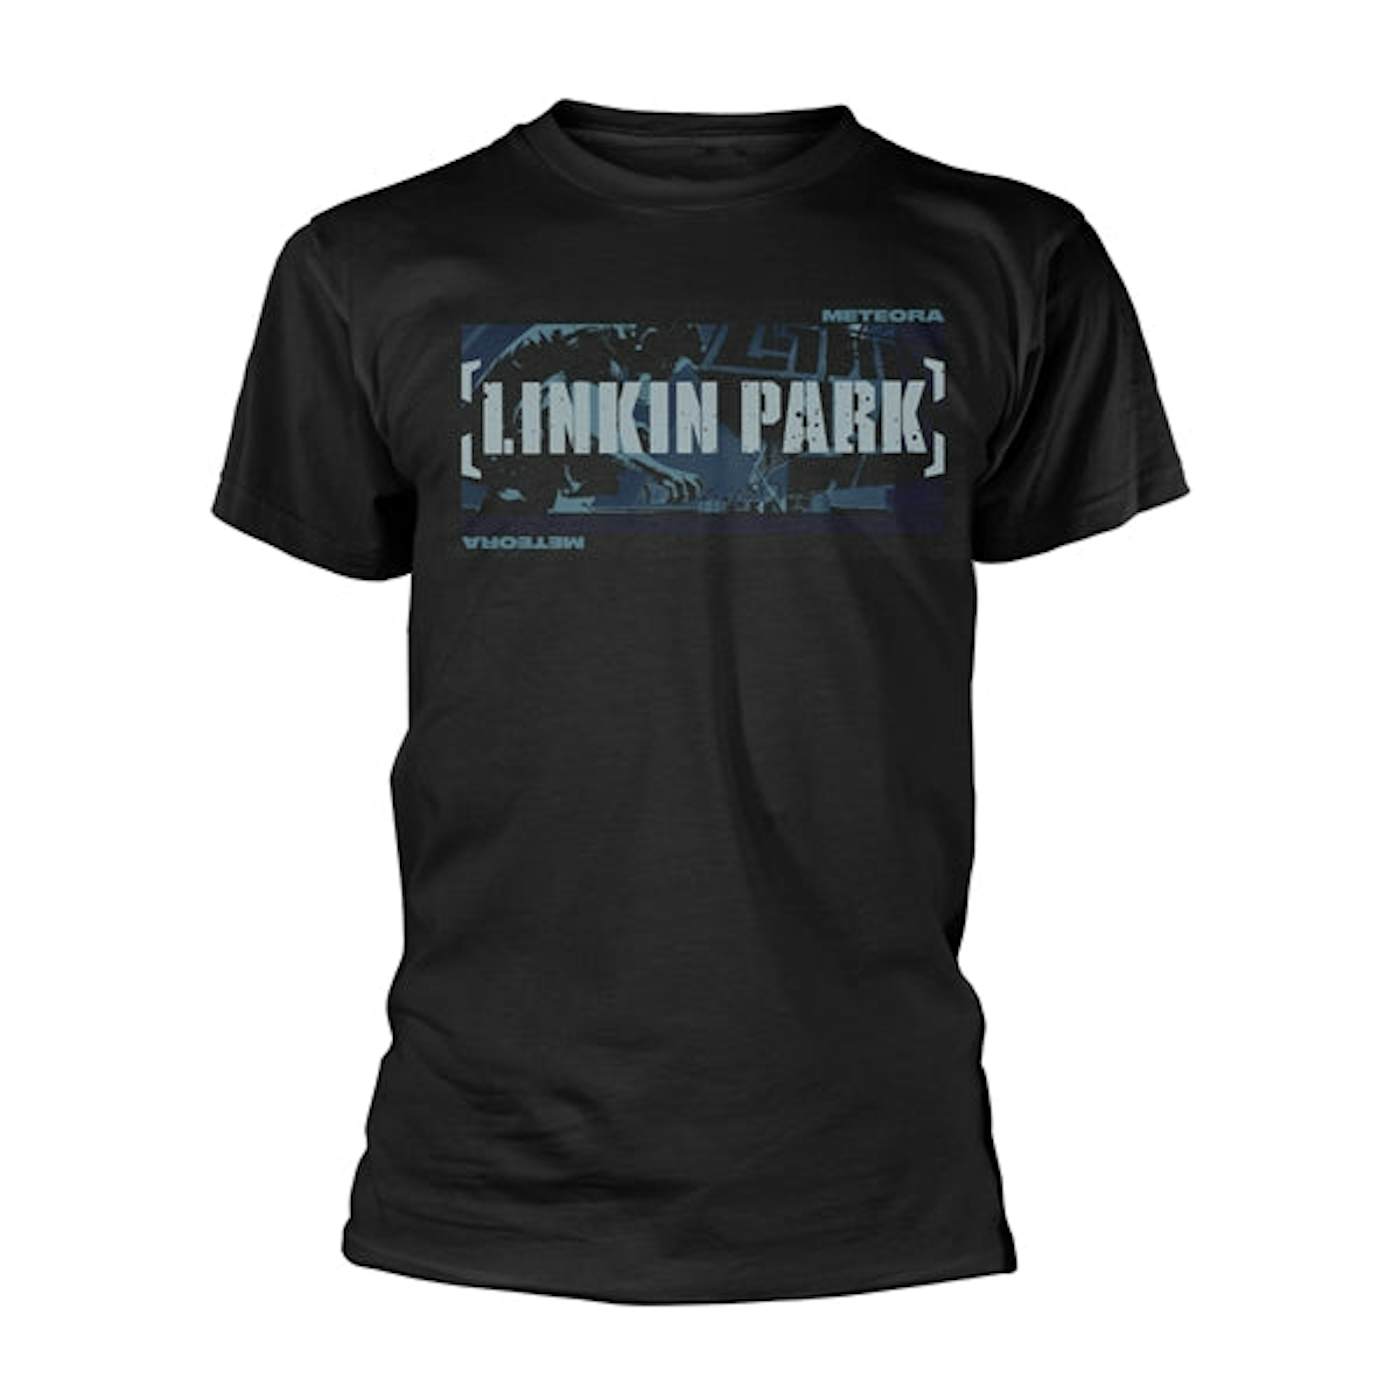 Linkin Park T Shirt - Meteora Blue Spray